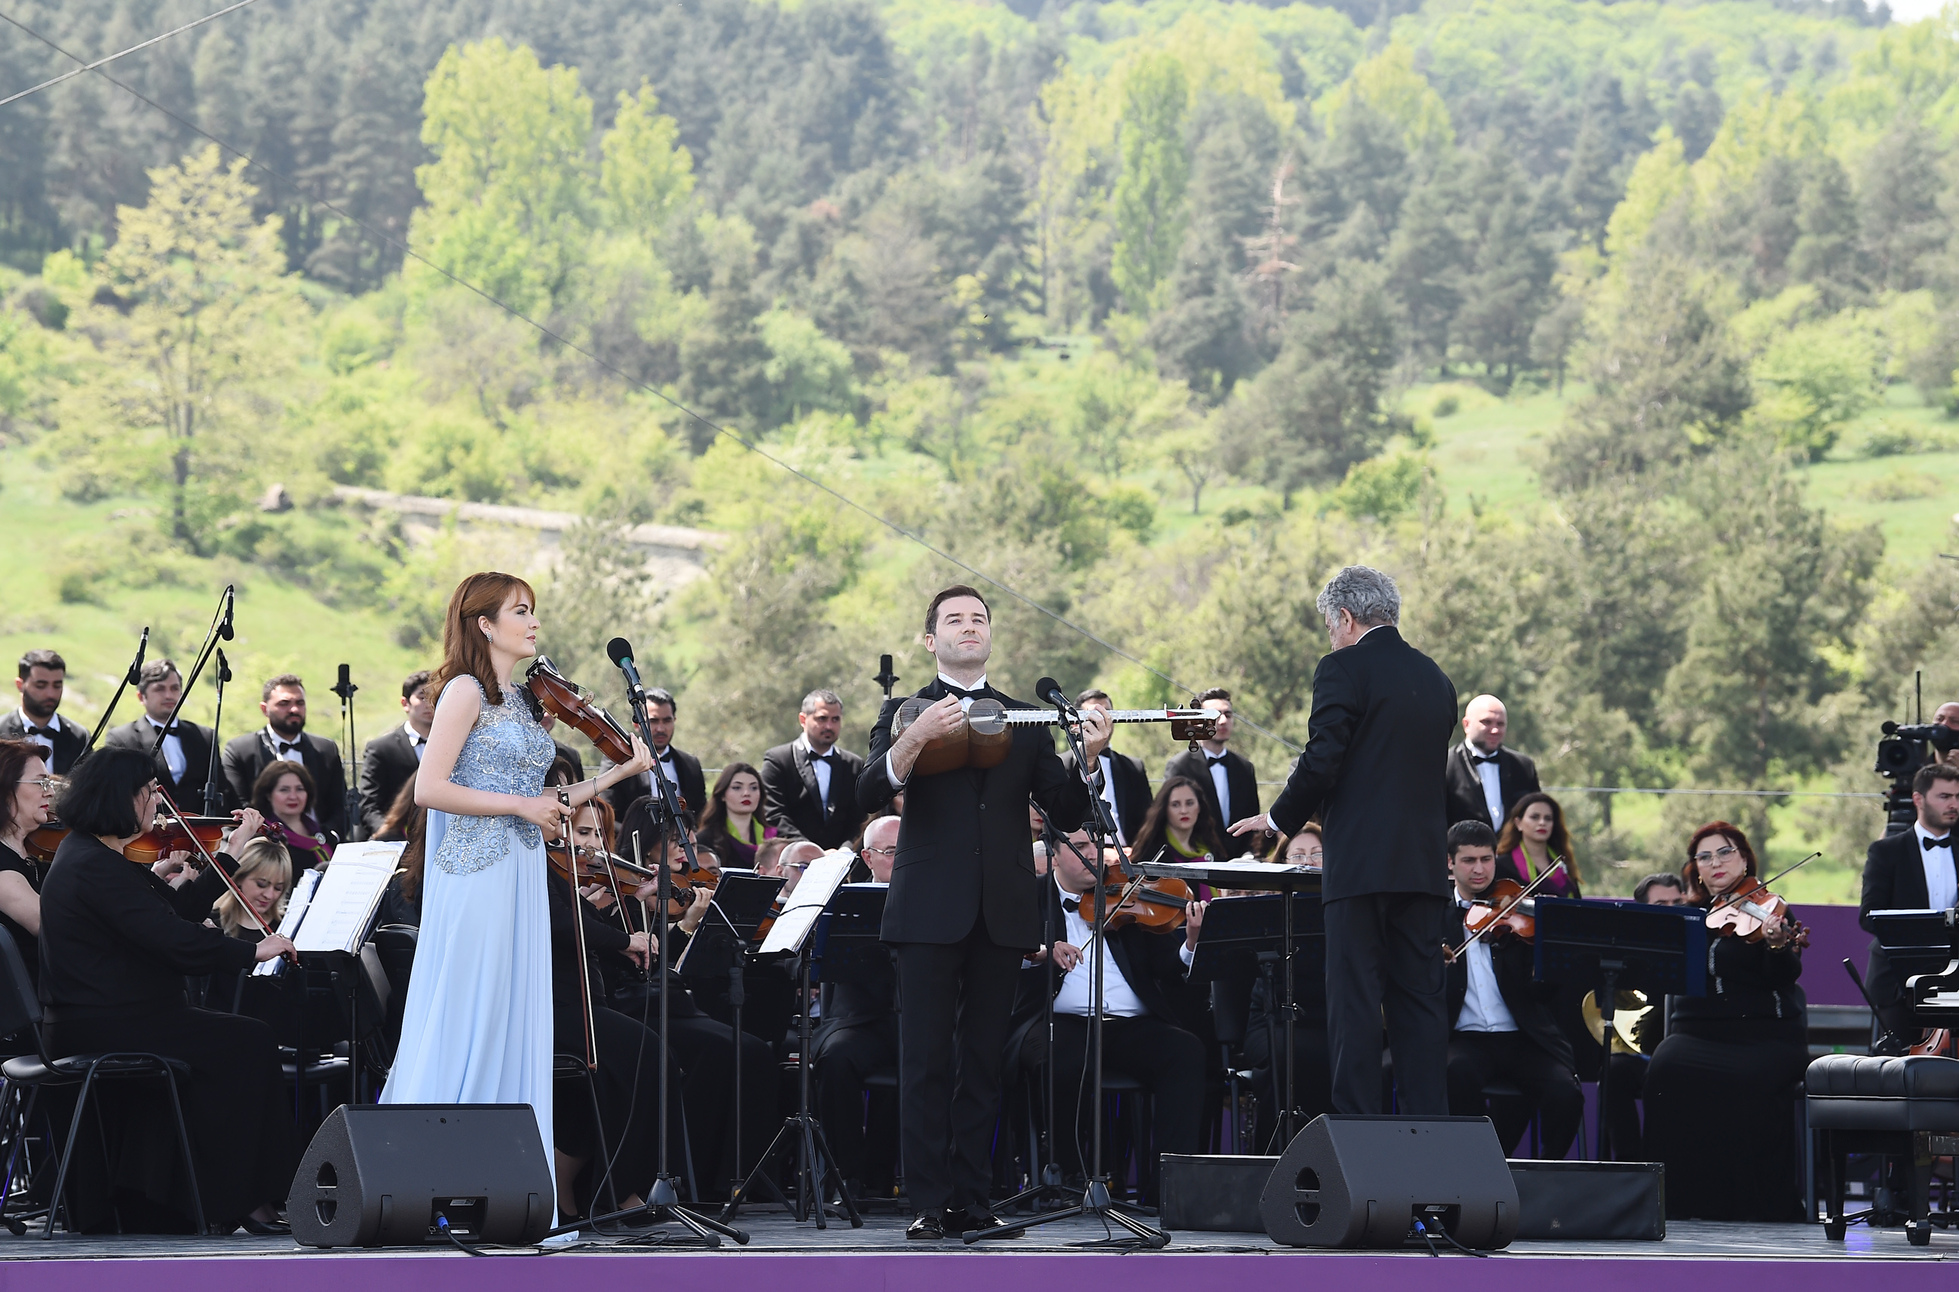 Şuşada “Xarıbülbül" musiqi festivalı